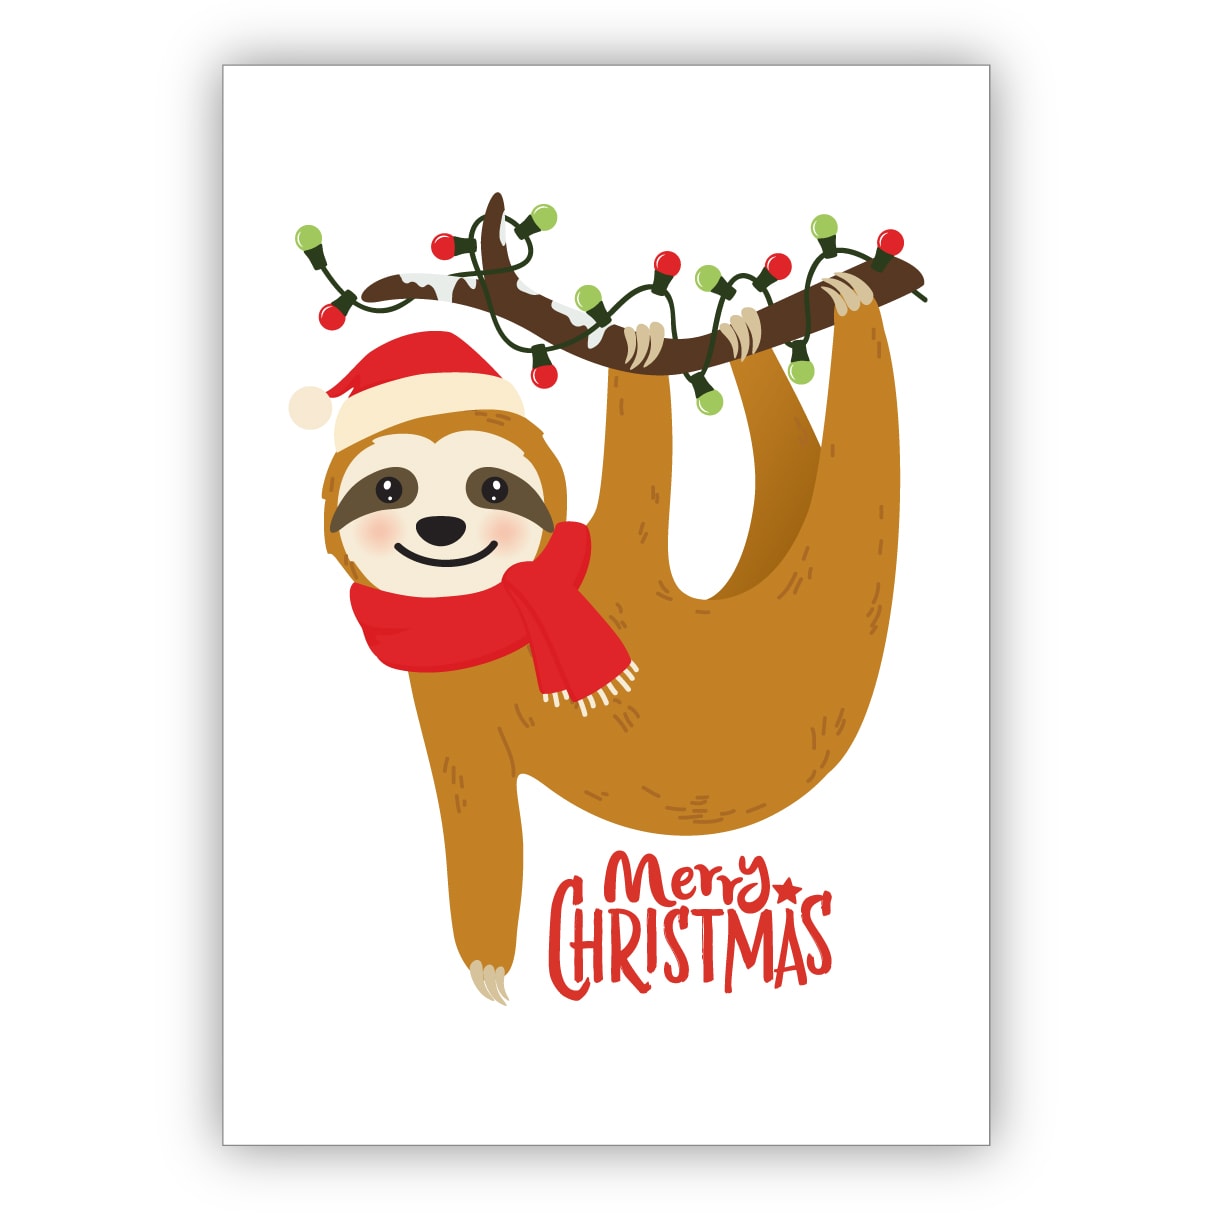 Coole Humorvolle Weihnachtskarte Mit Faultier Merry Christmas Kartenkaufrausch De